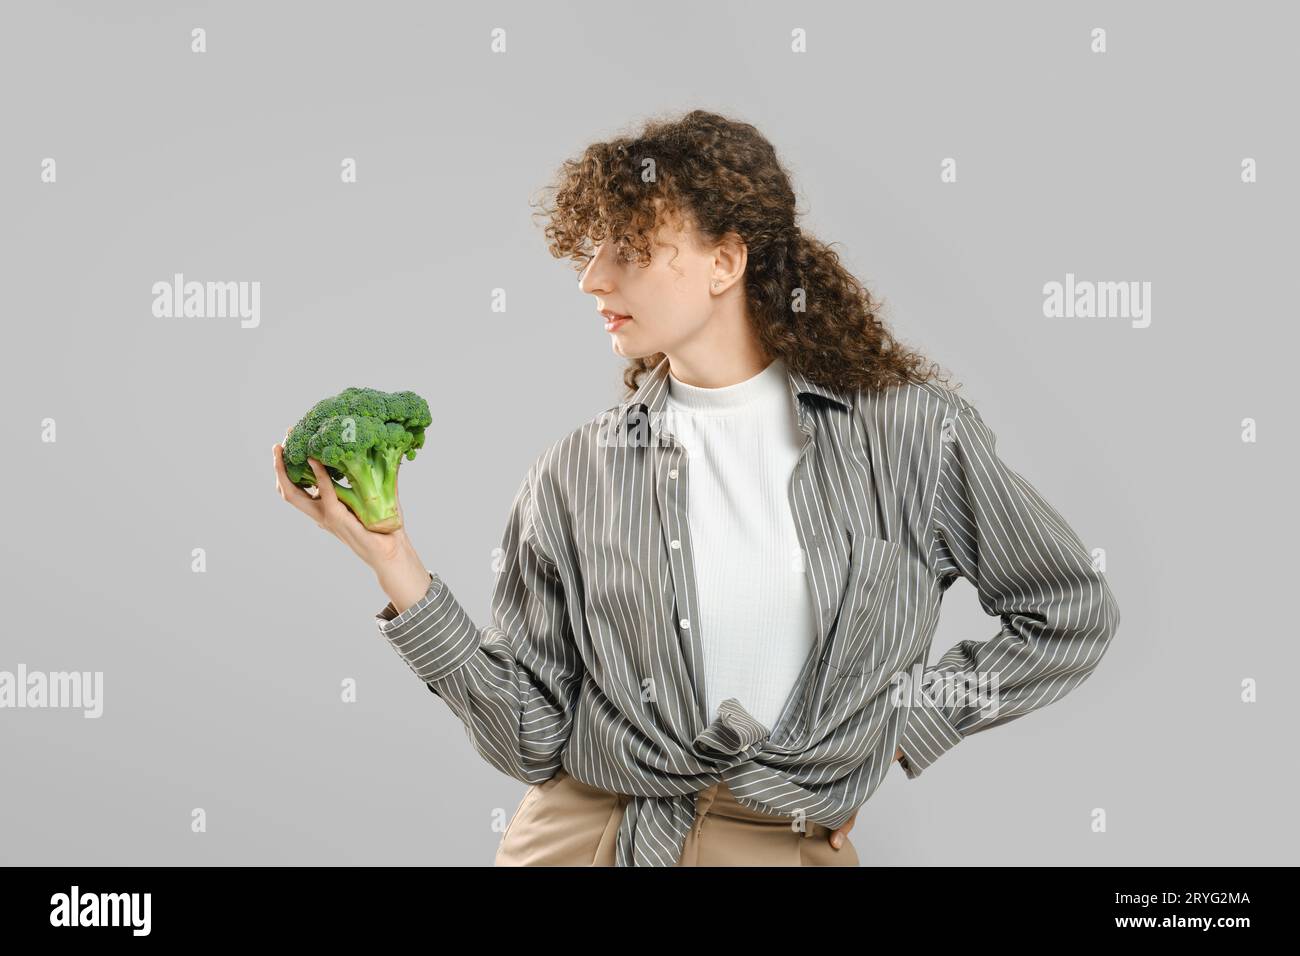 La donna con lunghi capelli ricci tiene i broccoli in mano e li guarda Foto Stock